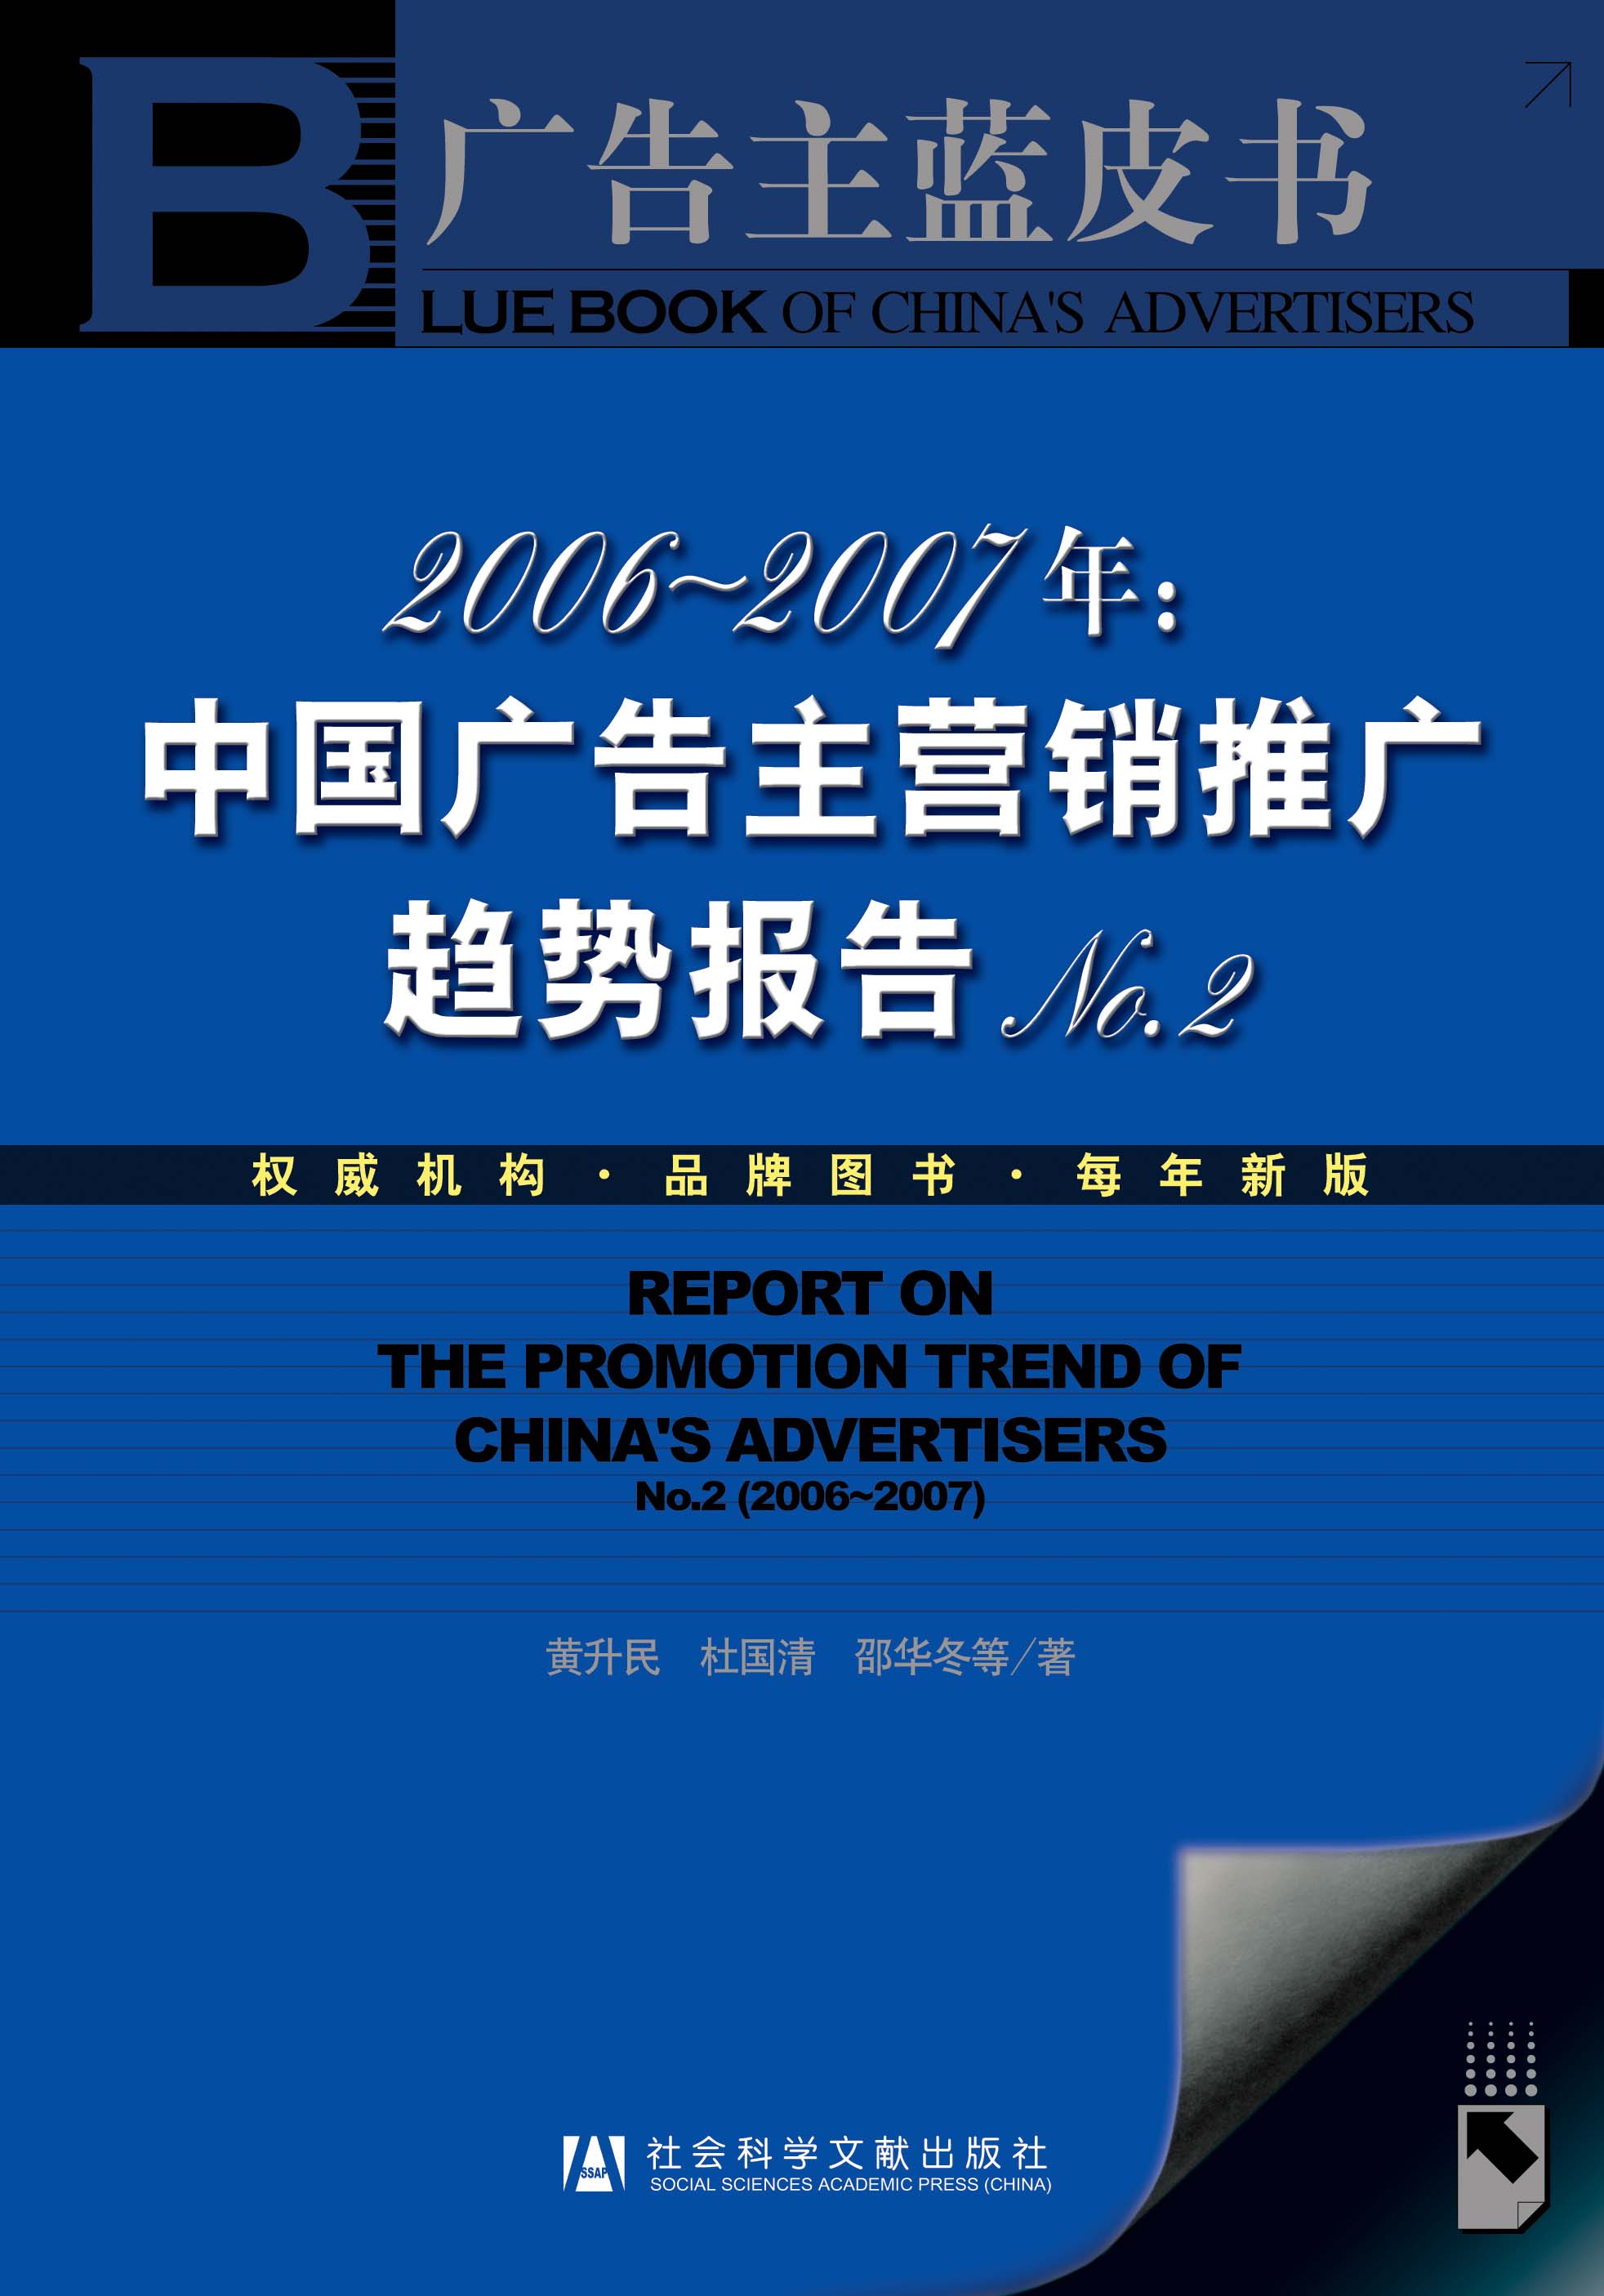 2006-2007年:中国广告主营销推广趋势报告 No.2